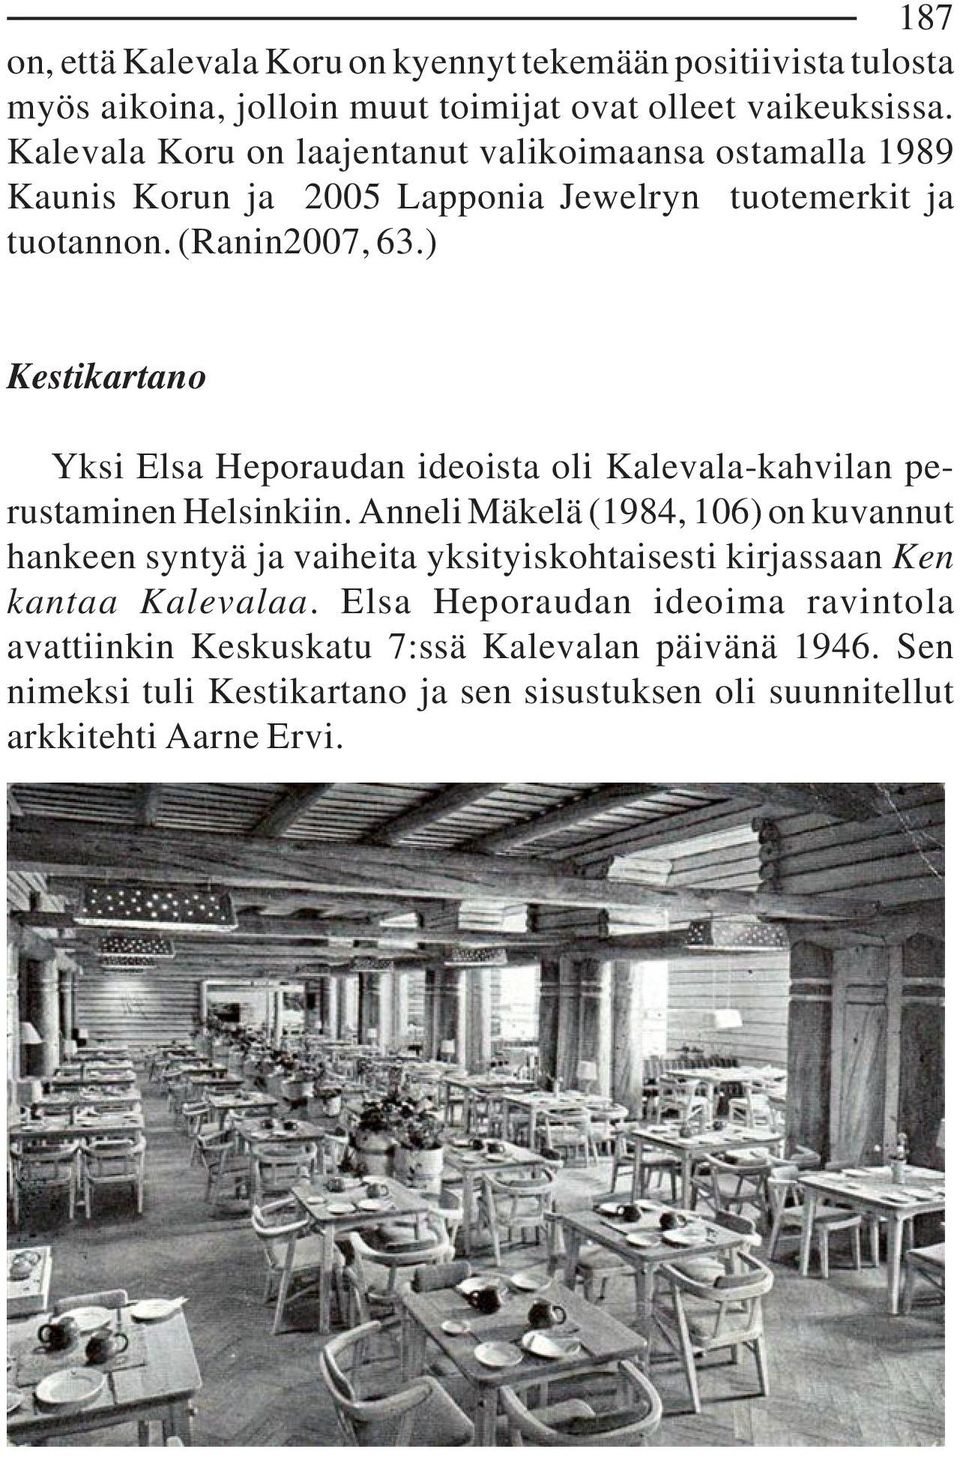 ) Kestikartano Yksi Elsa Heporaudan ideoista oli Kalevala-kahvilan perustaminen Helsinkiin.